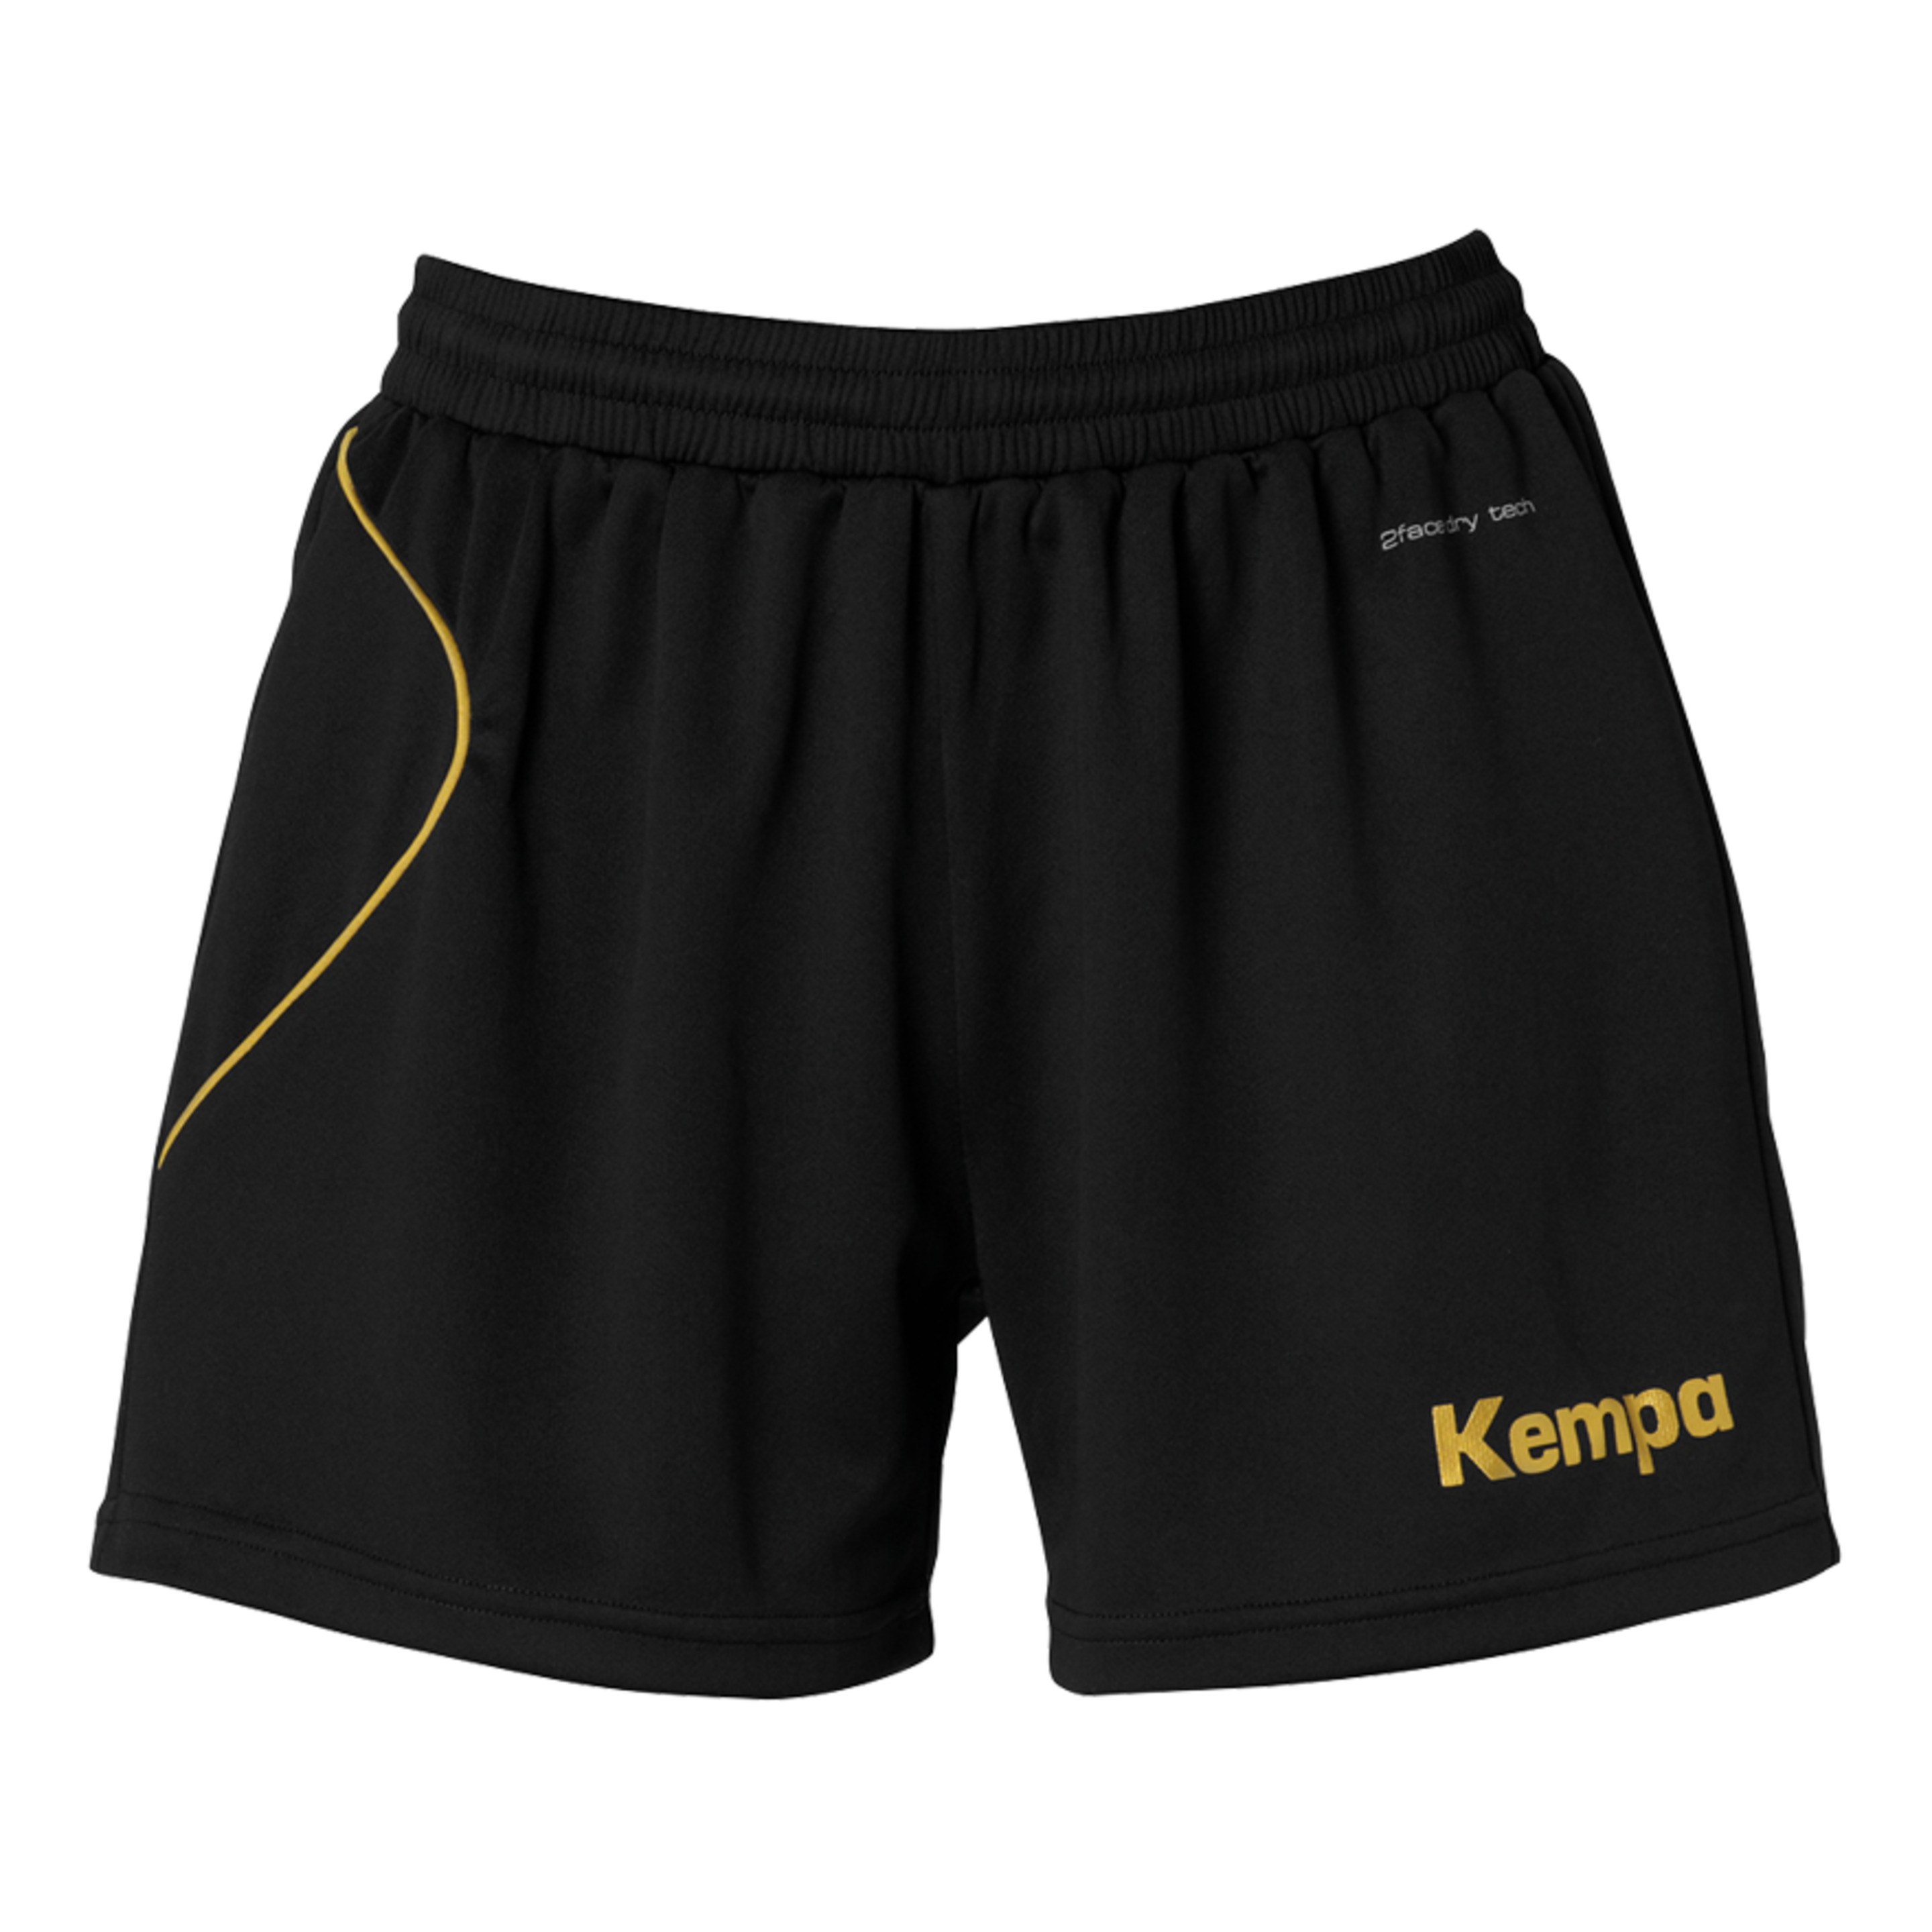 Curve Shorts De Mujer Negro/dorado Kempa - negro - 